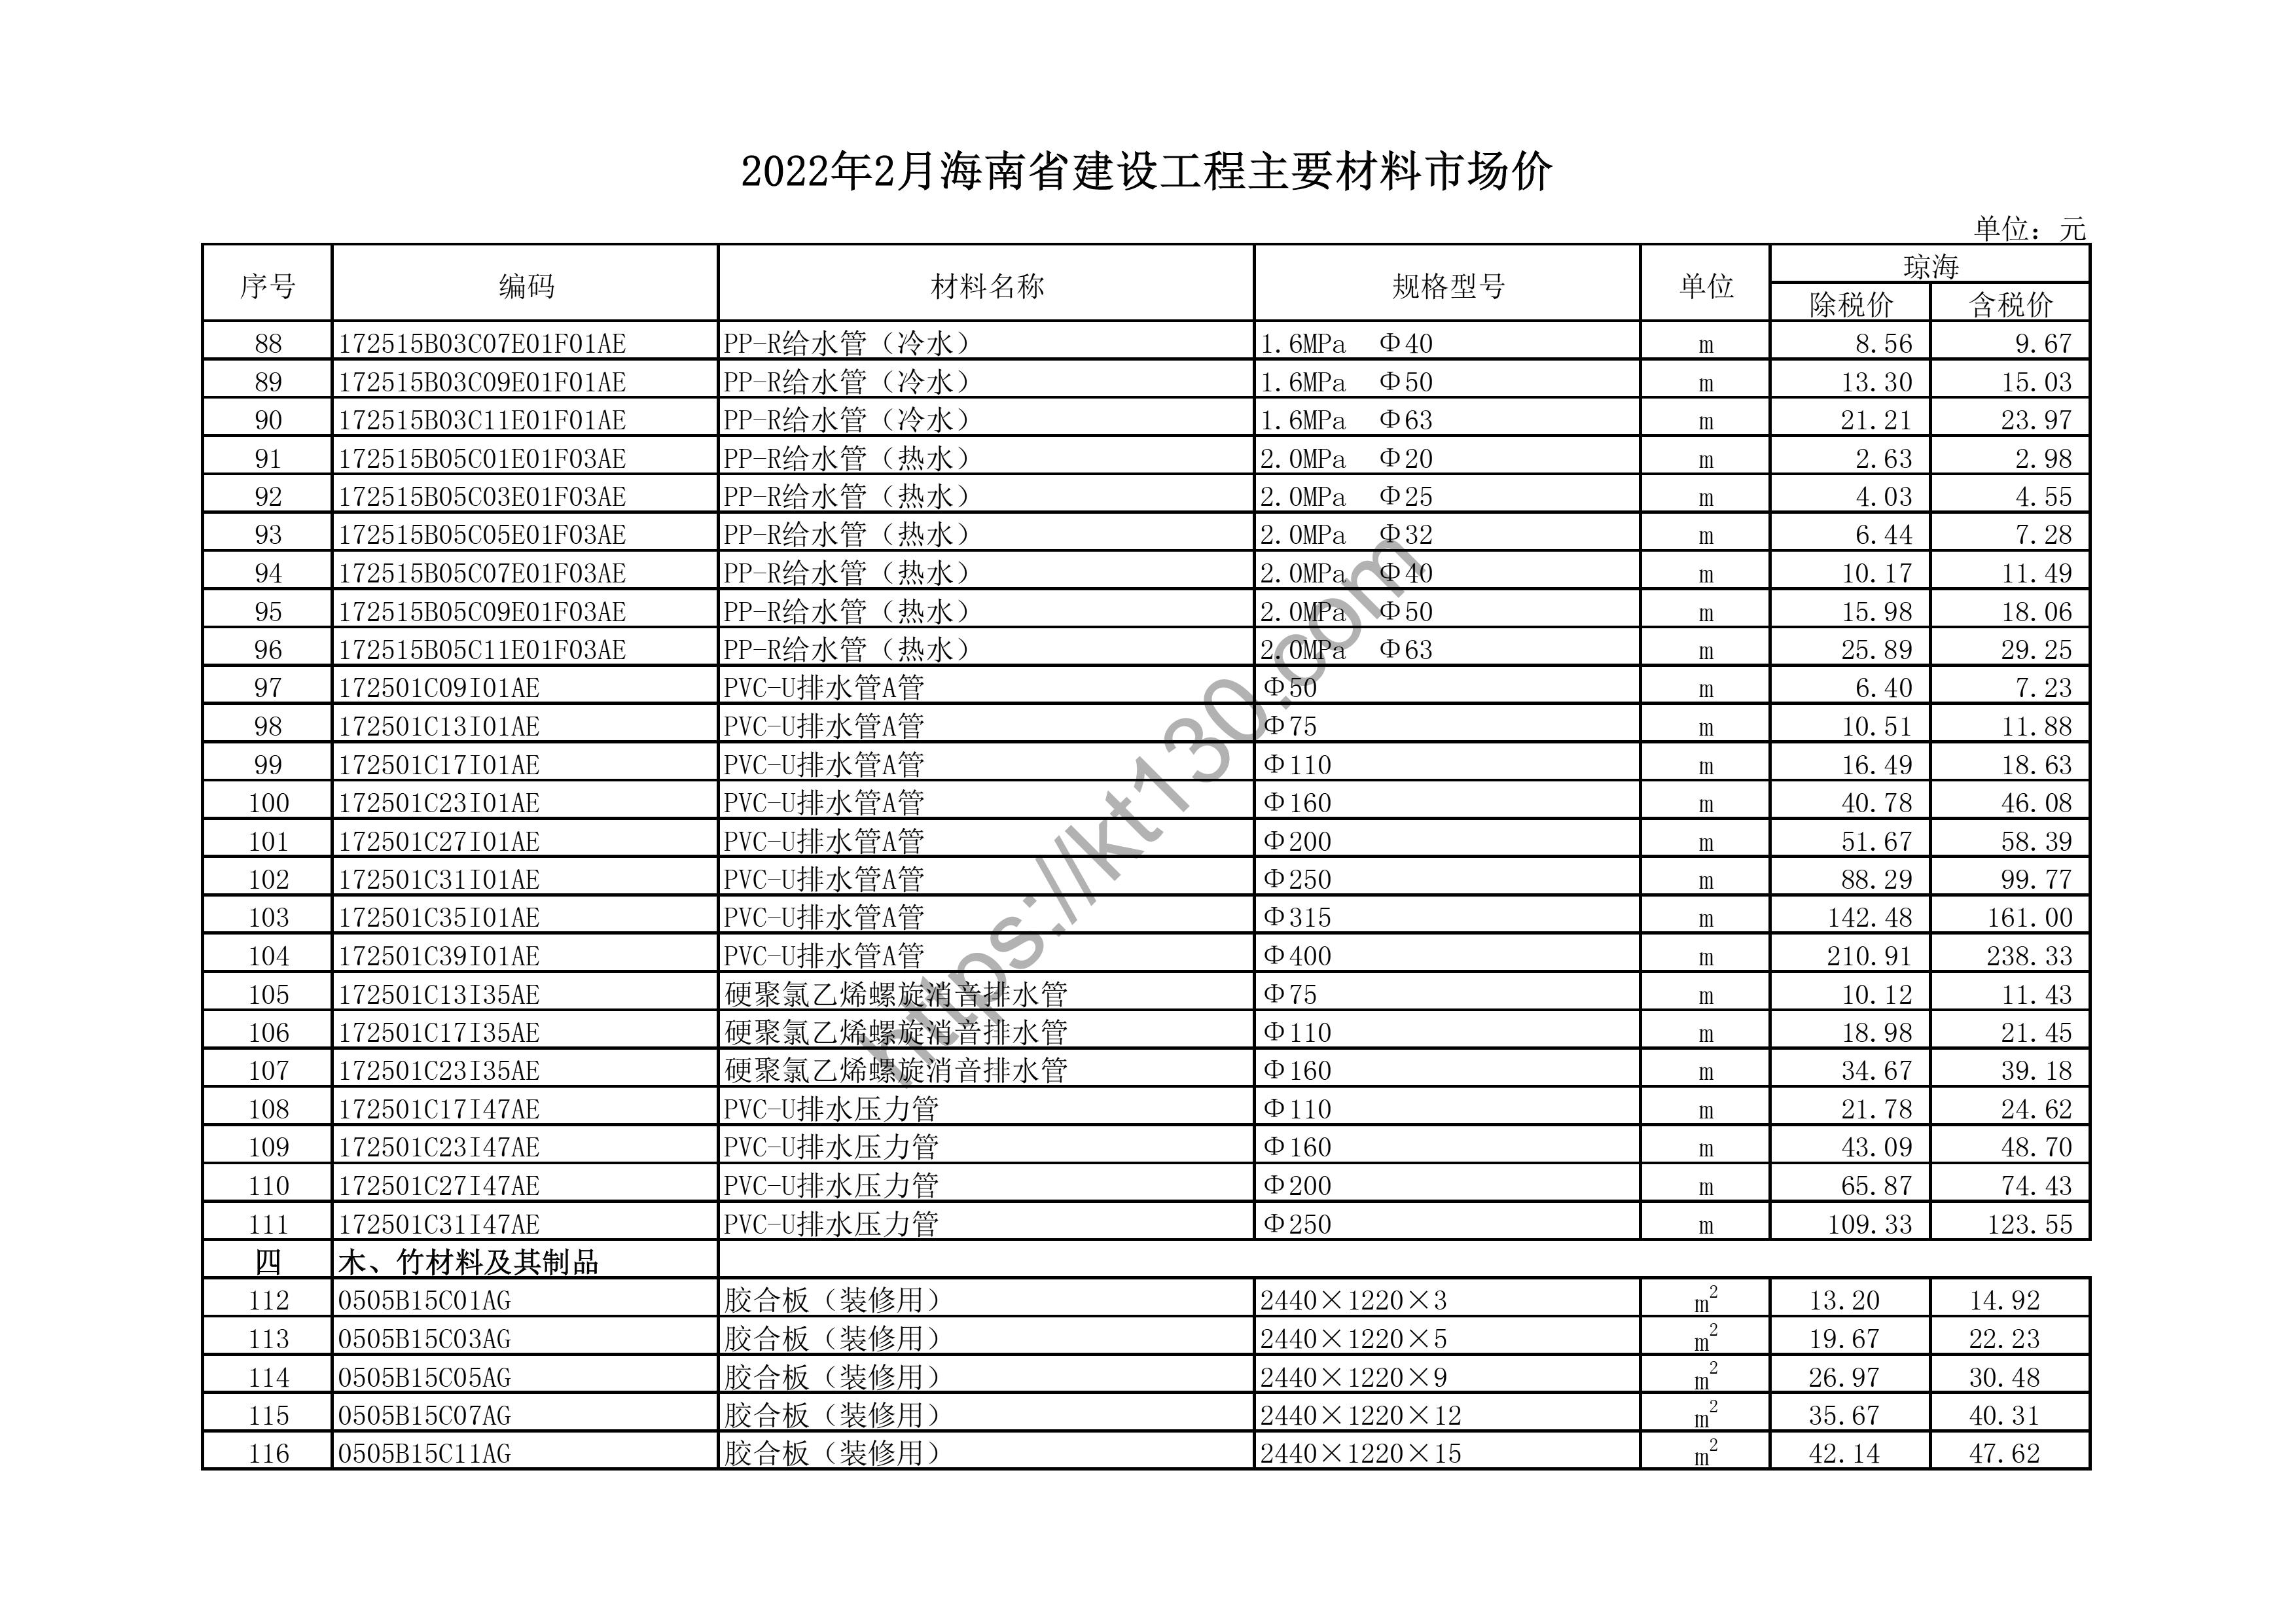 海南省2022年2月建筑材料价_钢化玻璃_43800